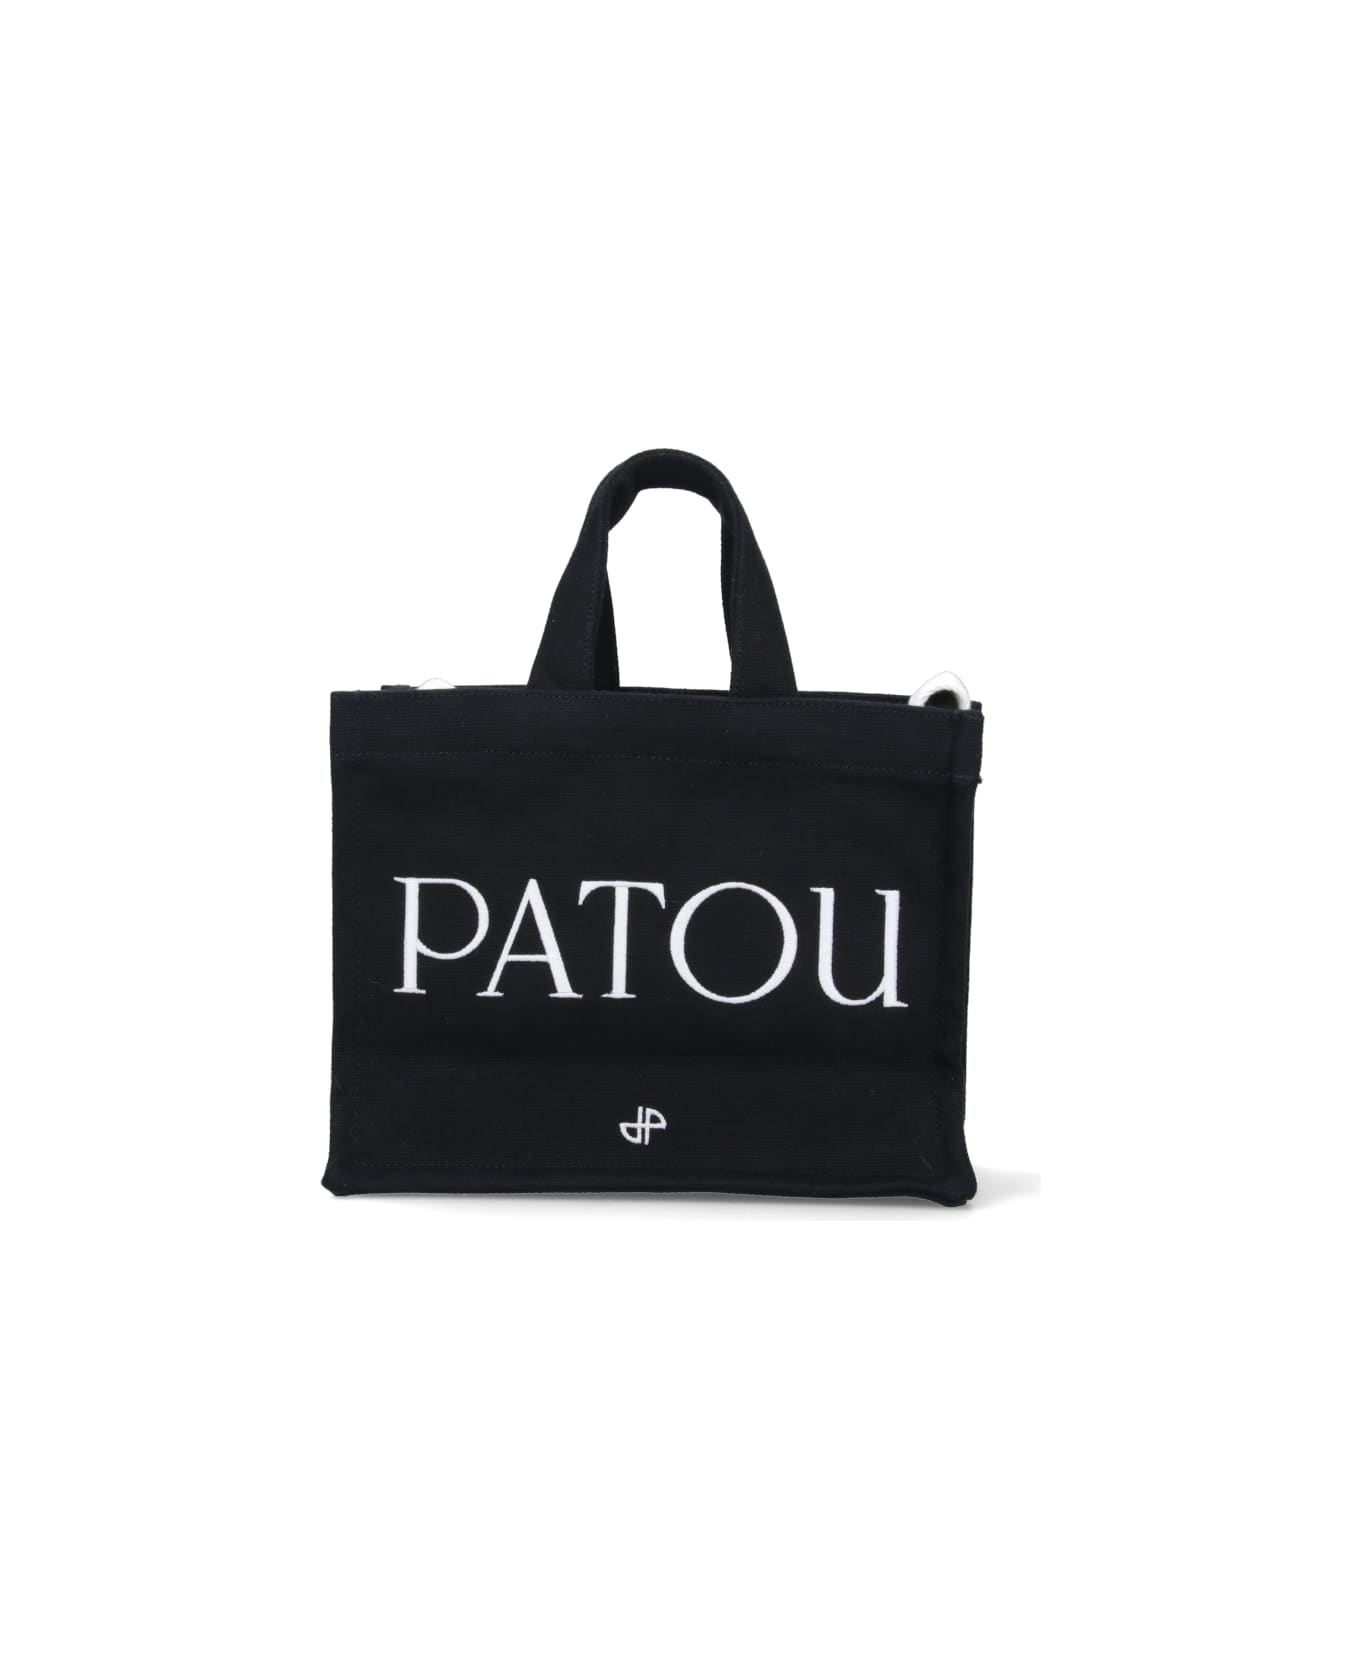 Patou Logo Tote Bag - Black   トートバッグ